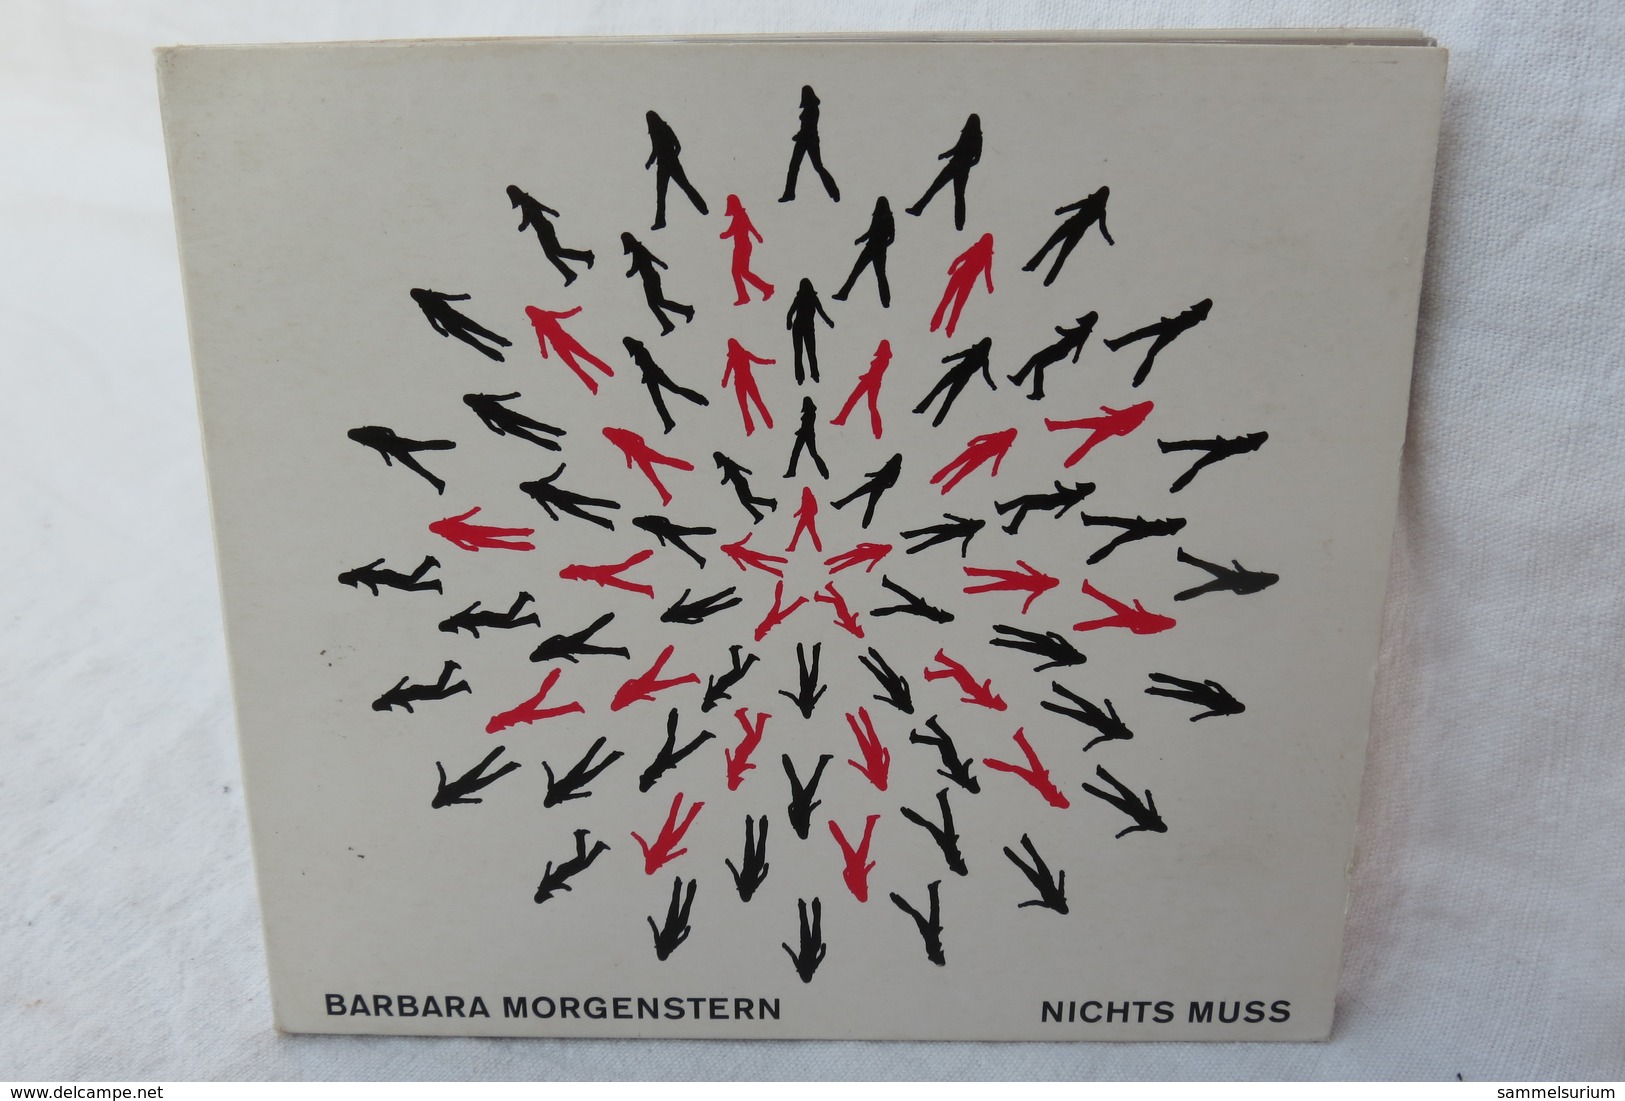 CD "Barbara Morgenstern" Nichts Muss - Other - German Music